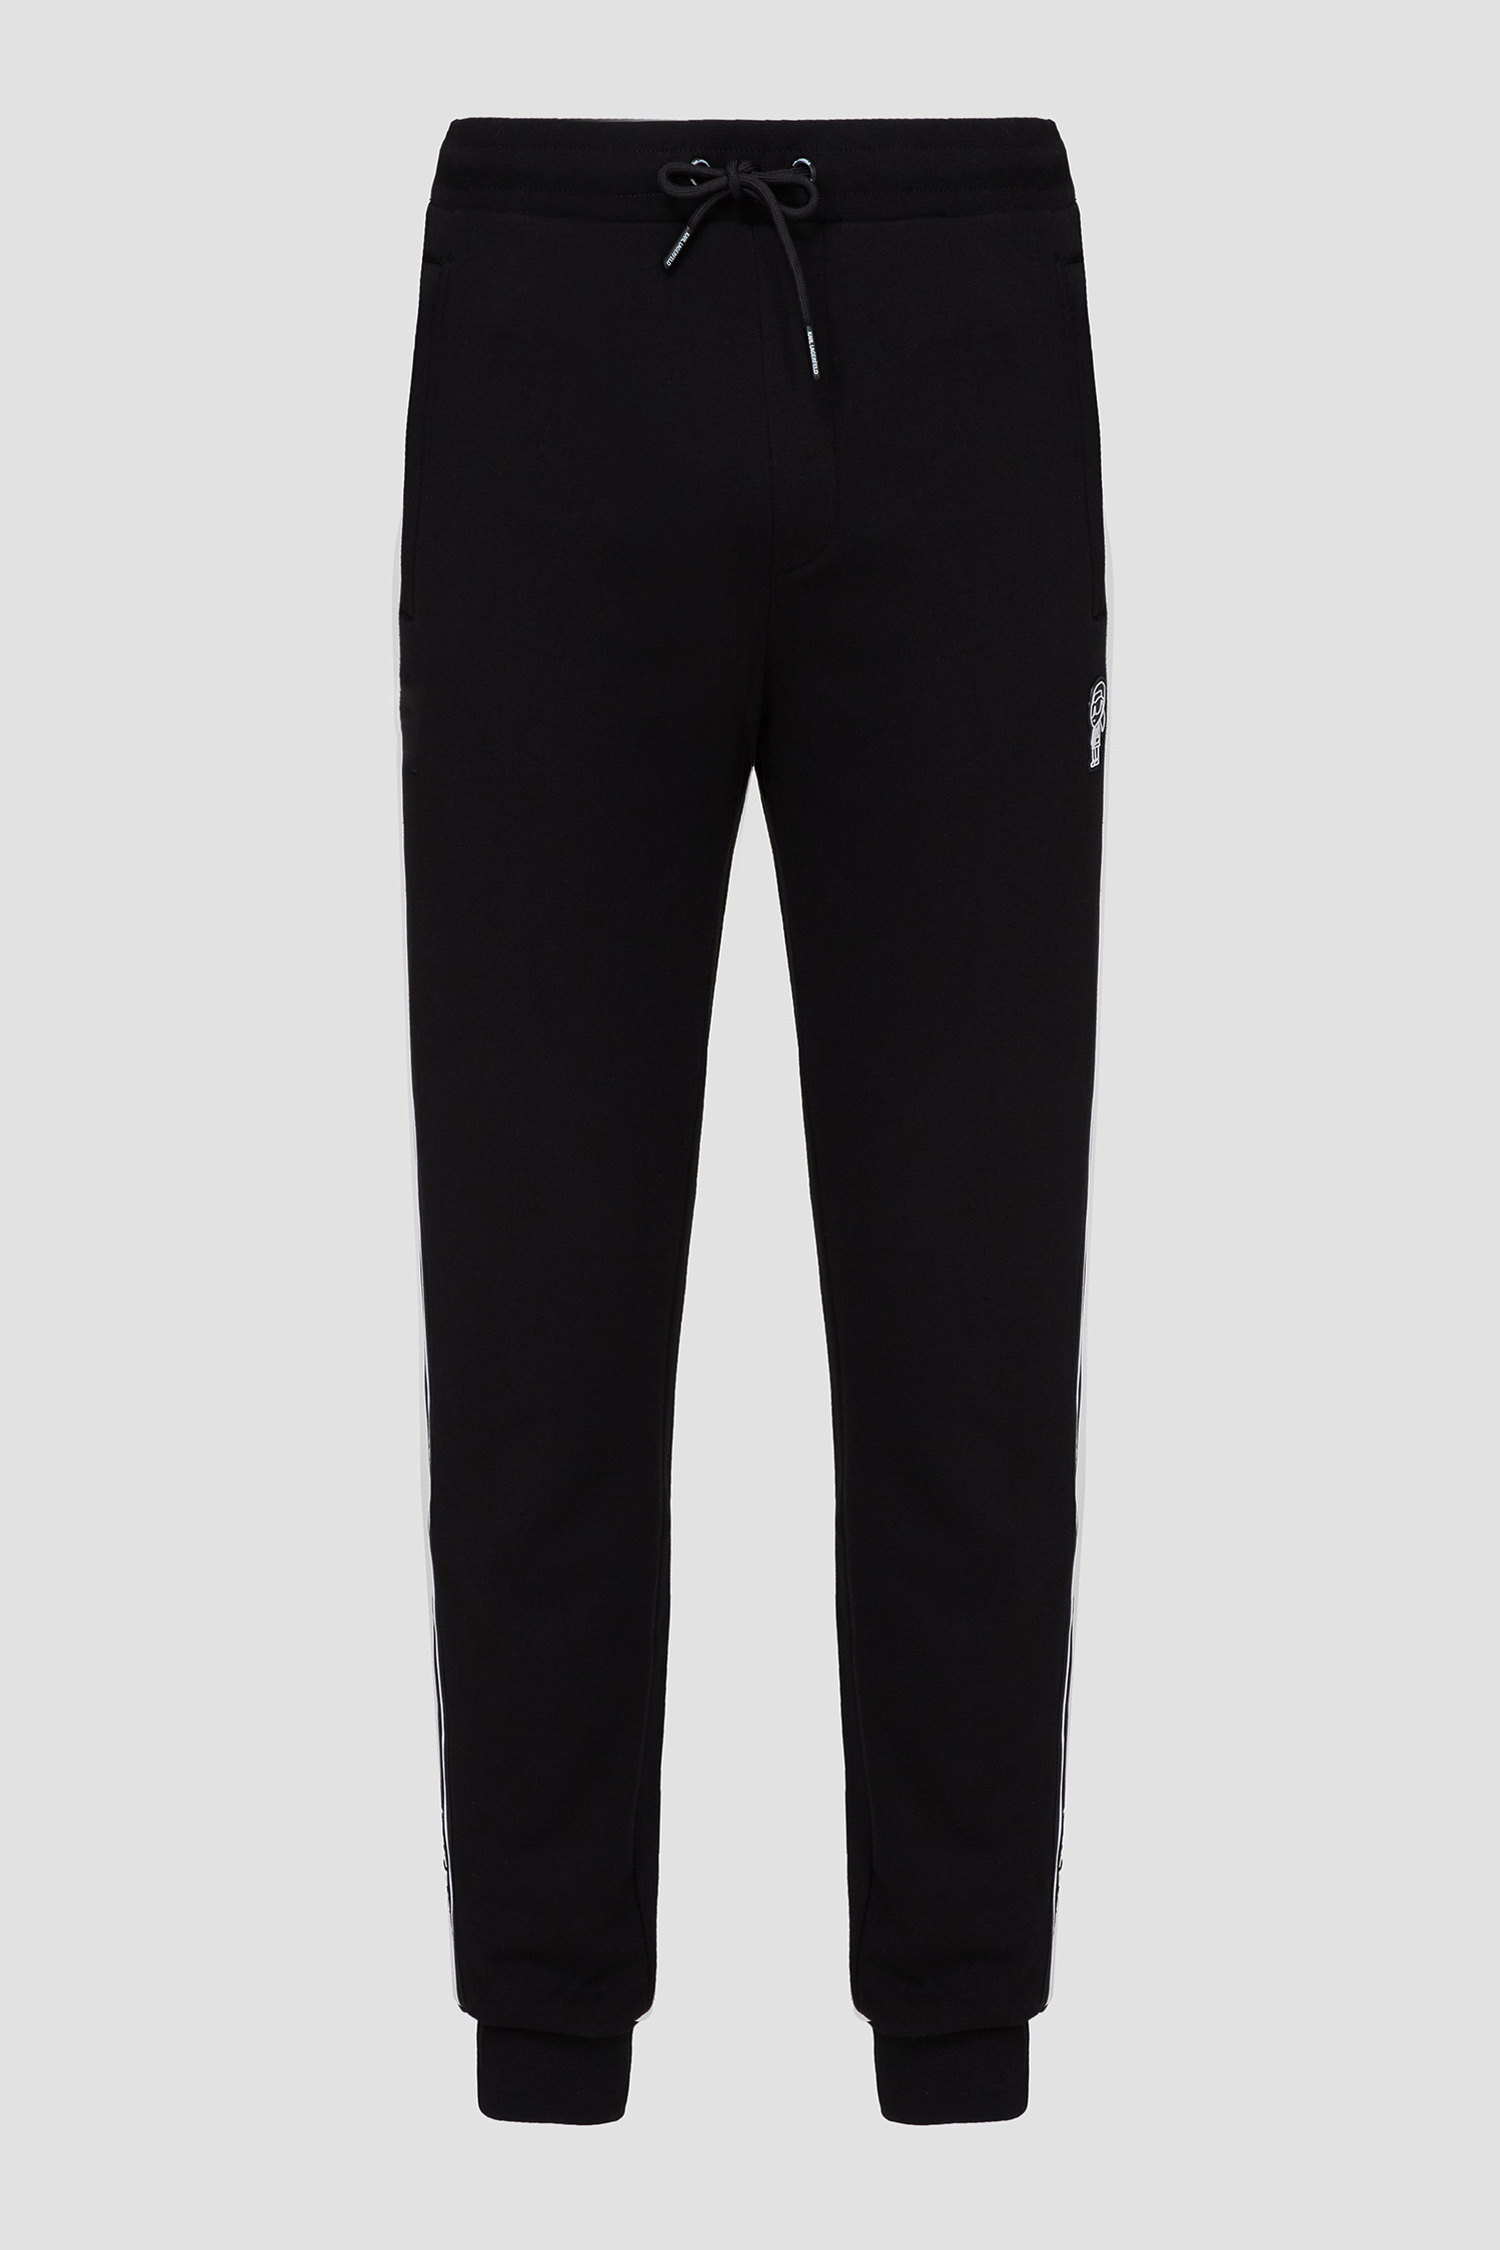 Чоловічі чорні спортивні штани Karl Lagerfeld 542900.705039;990